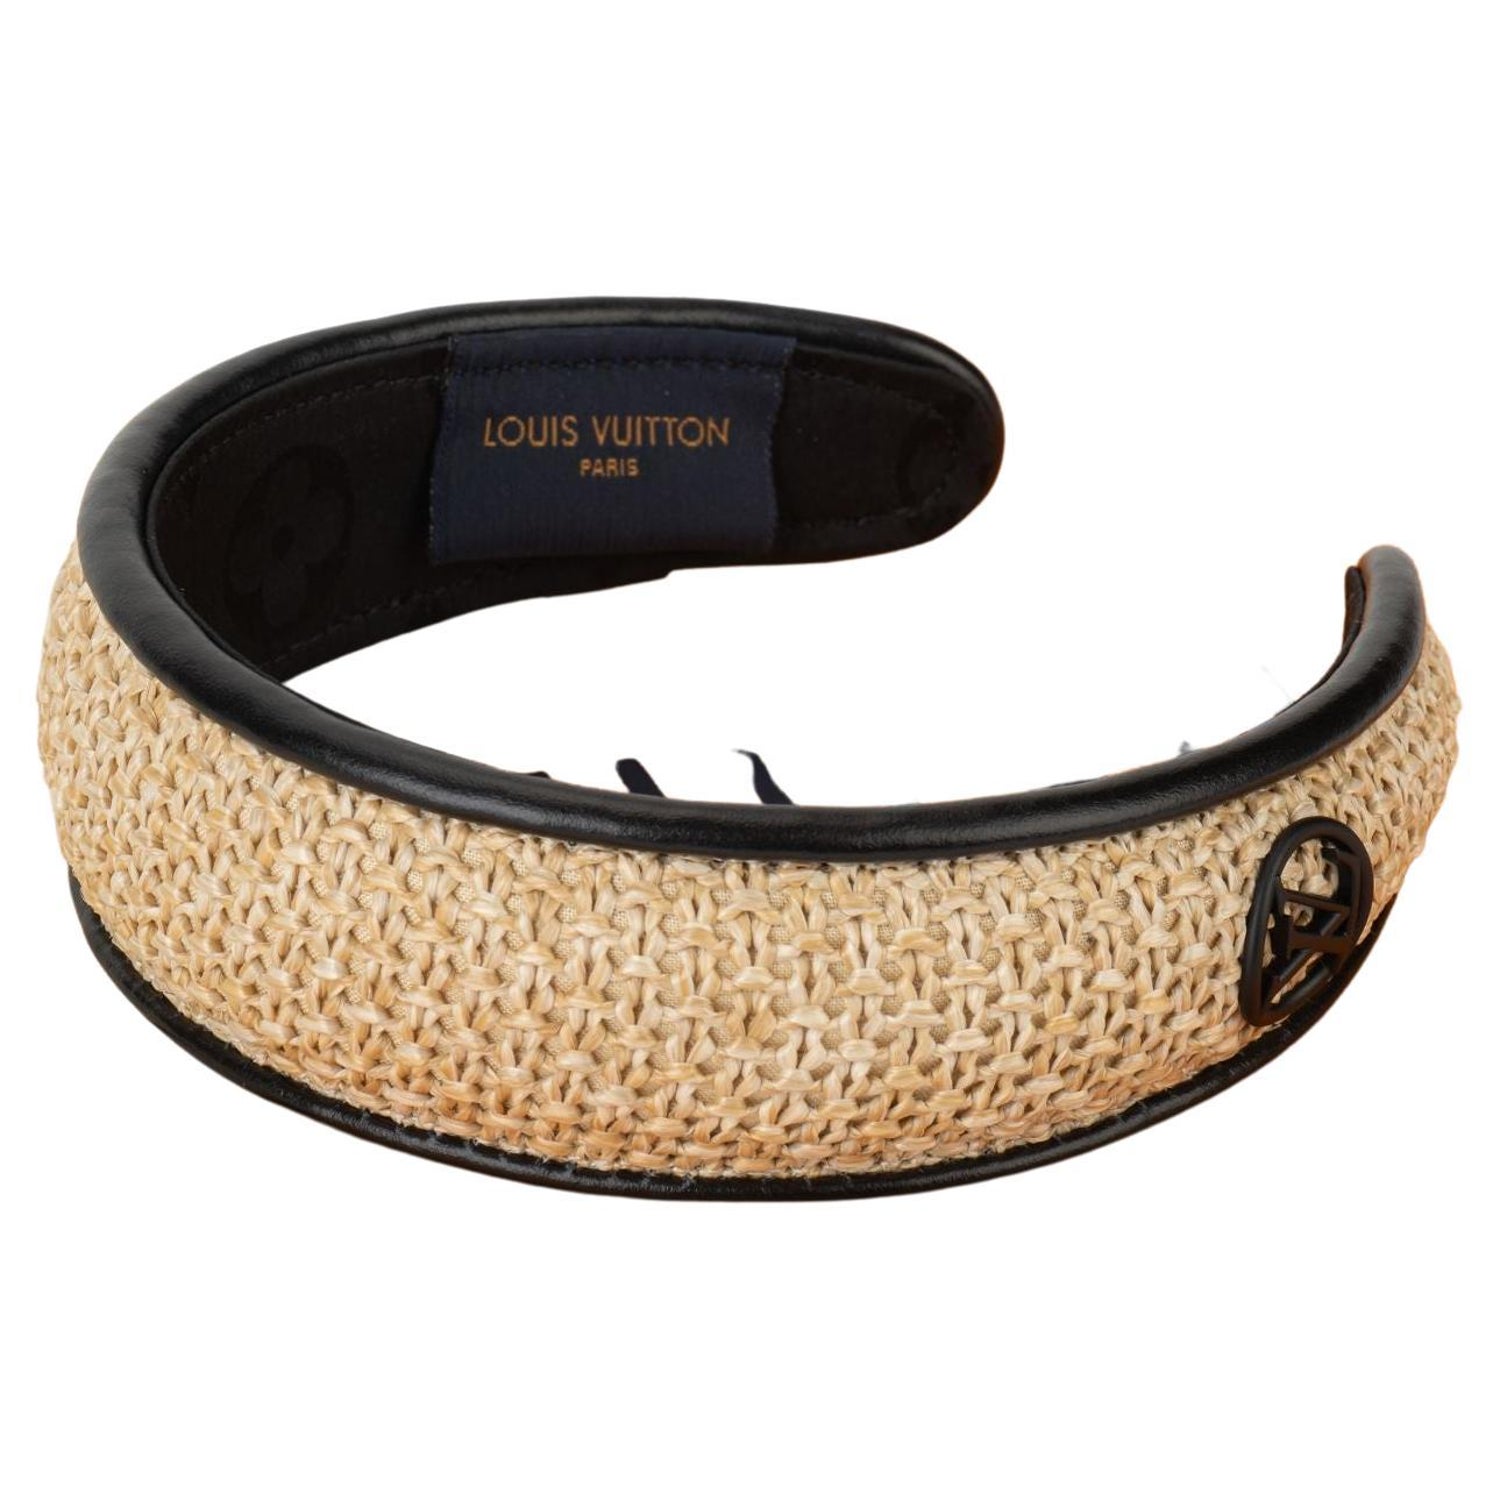 Louis Vuitton - Beads Headband - Leather - Black - Women - Luxury